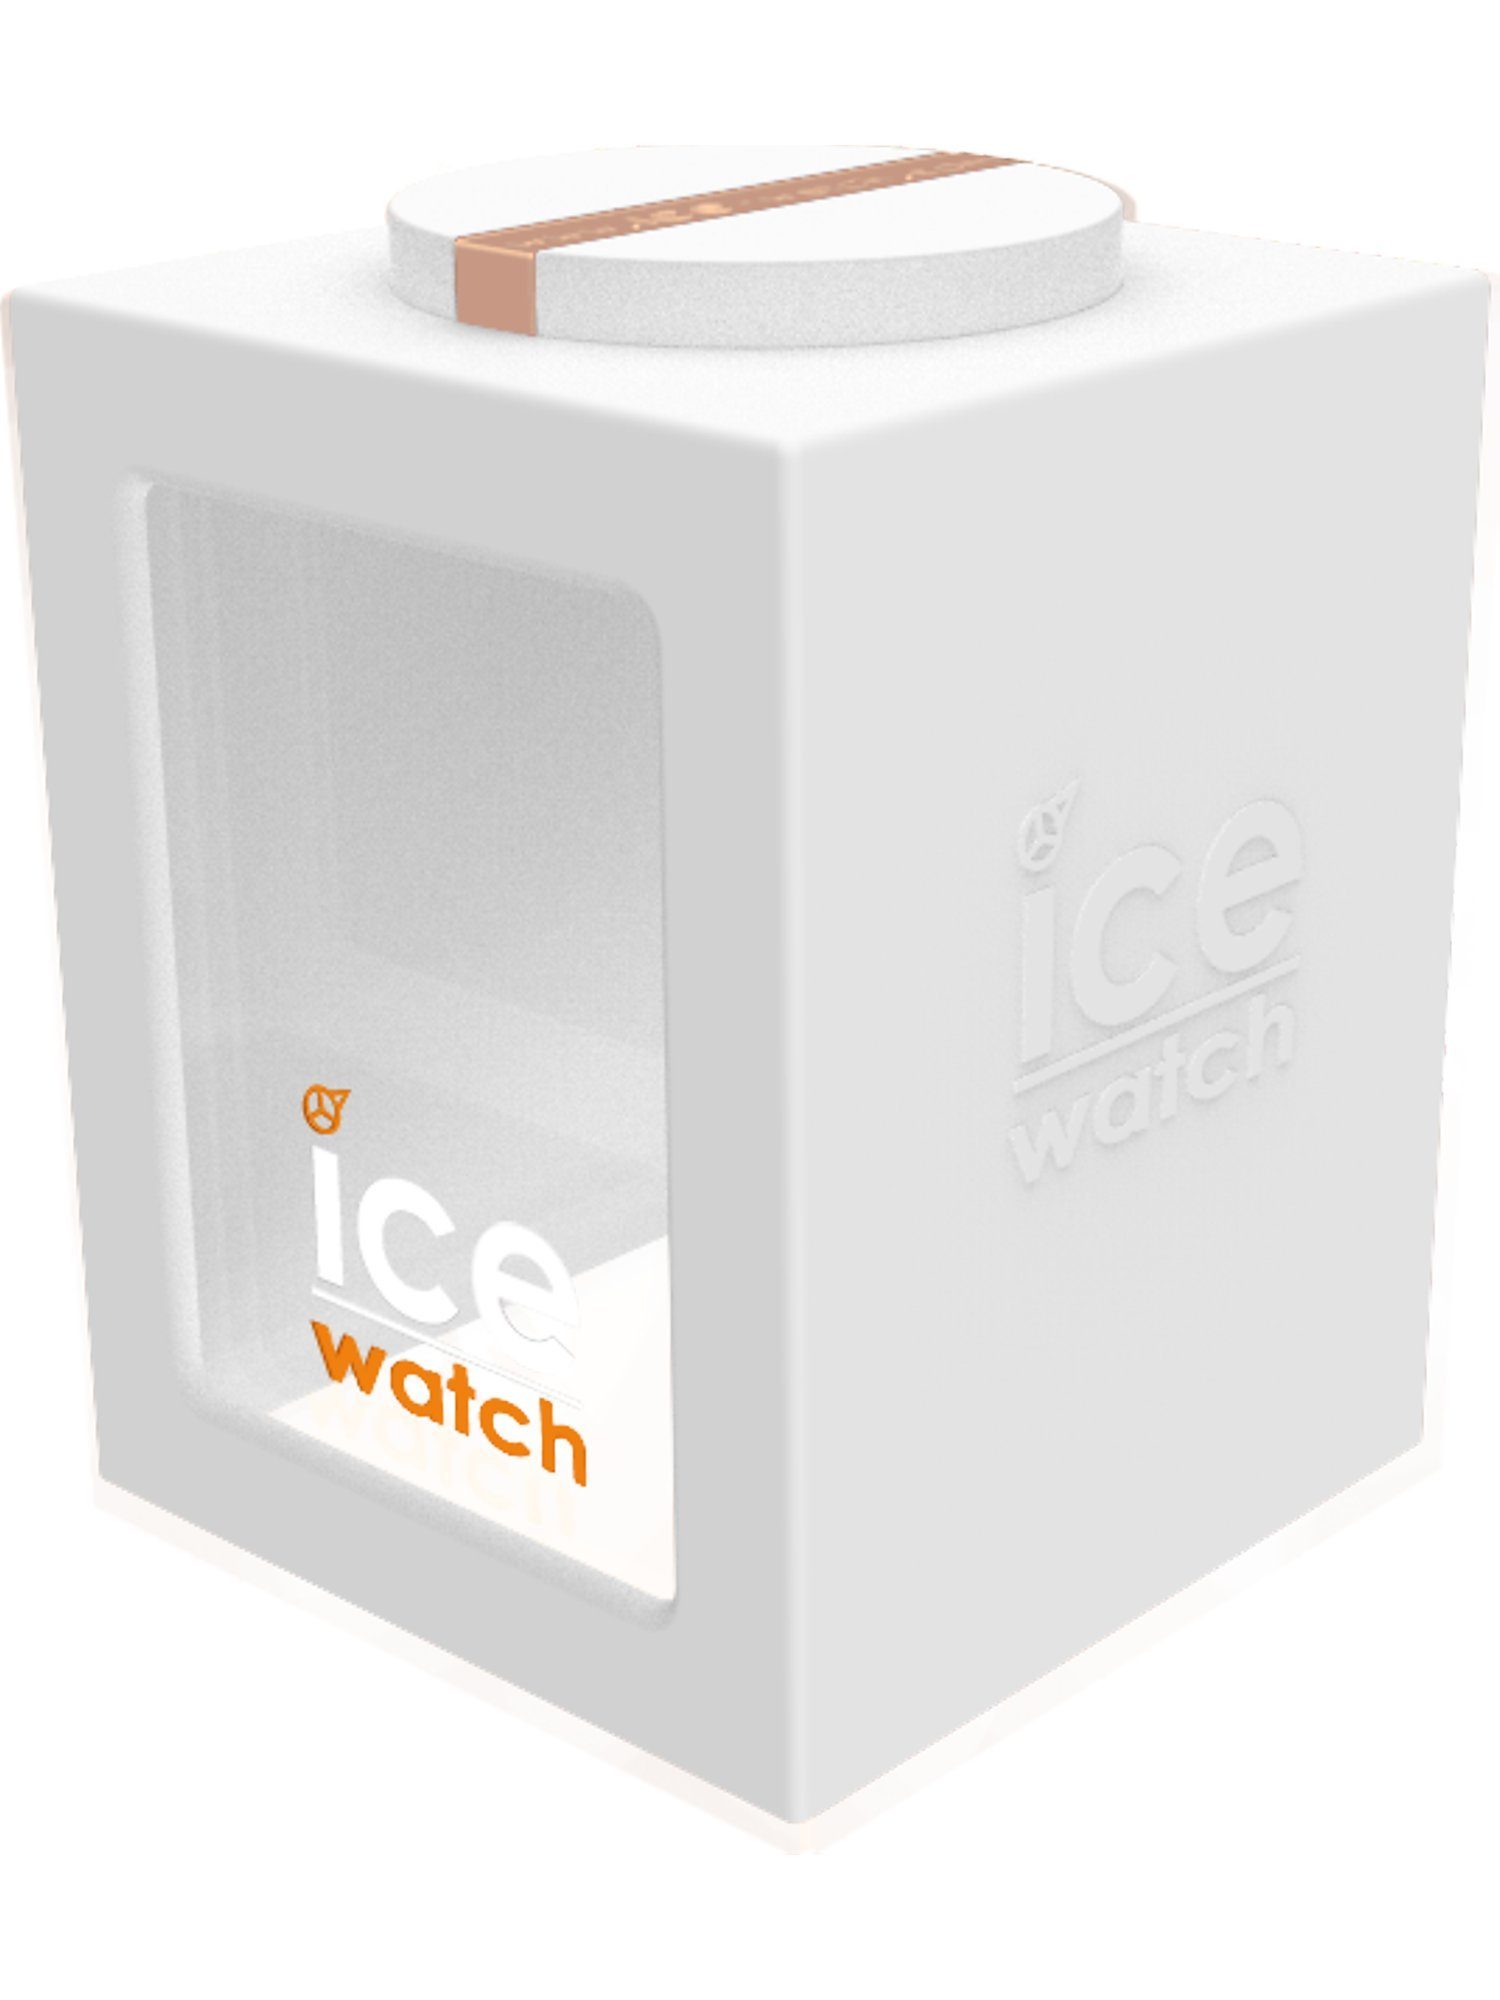 Watch ice-watch ICE Quarzuhr Damen-Uhren Quarz Analog